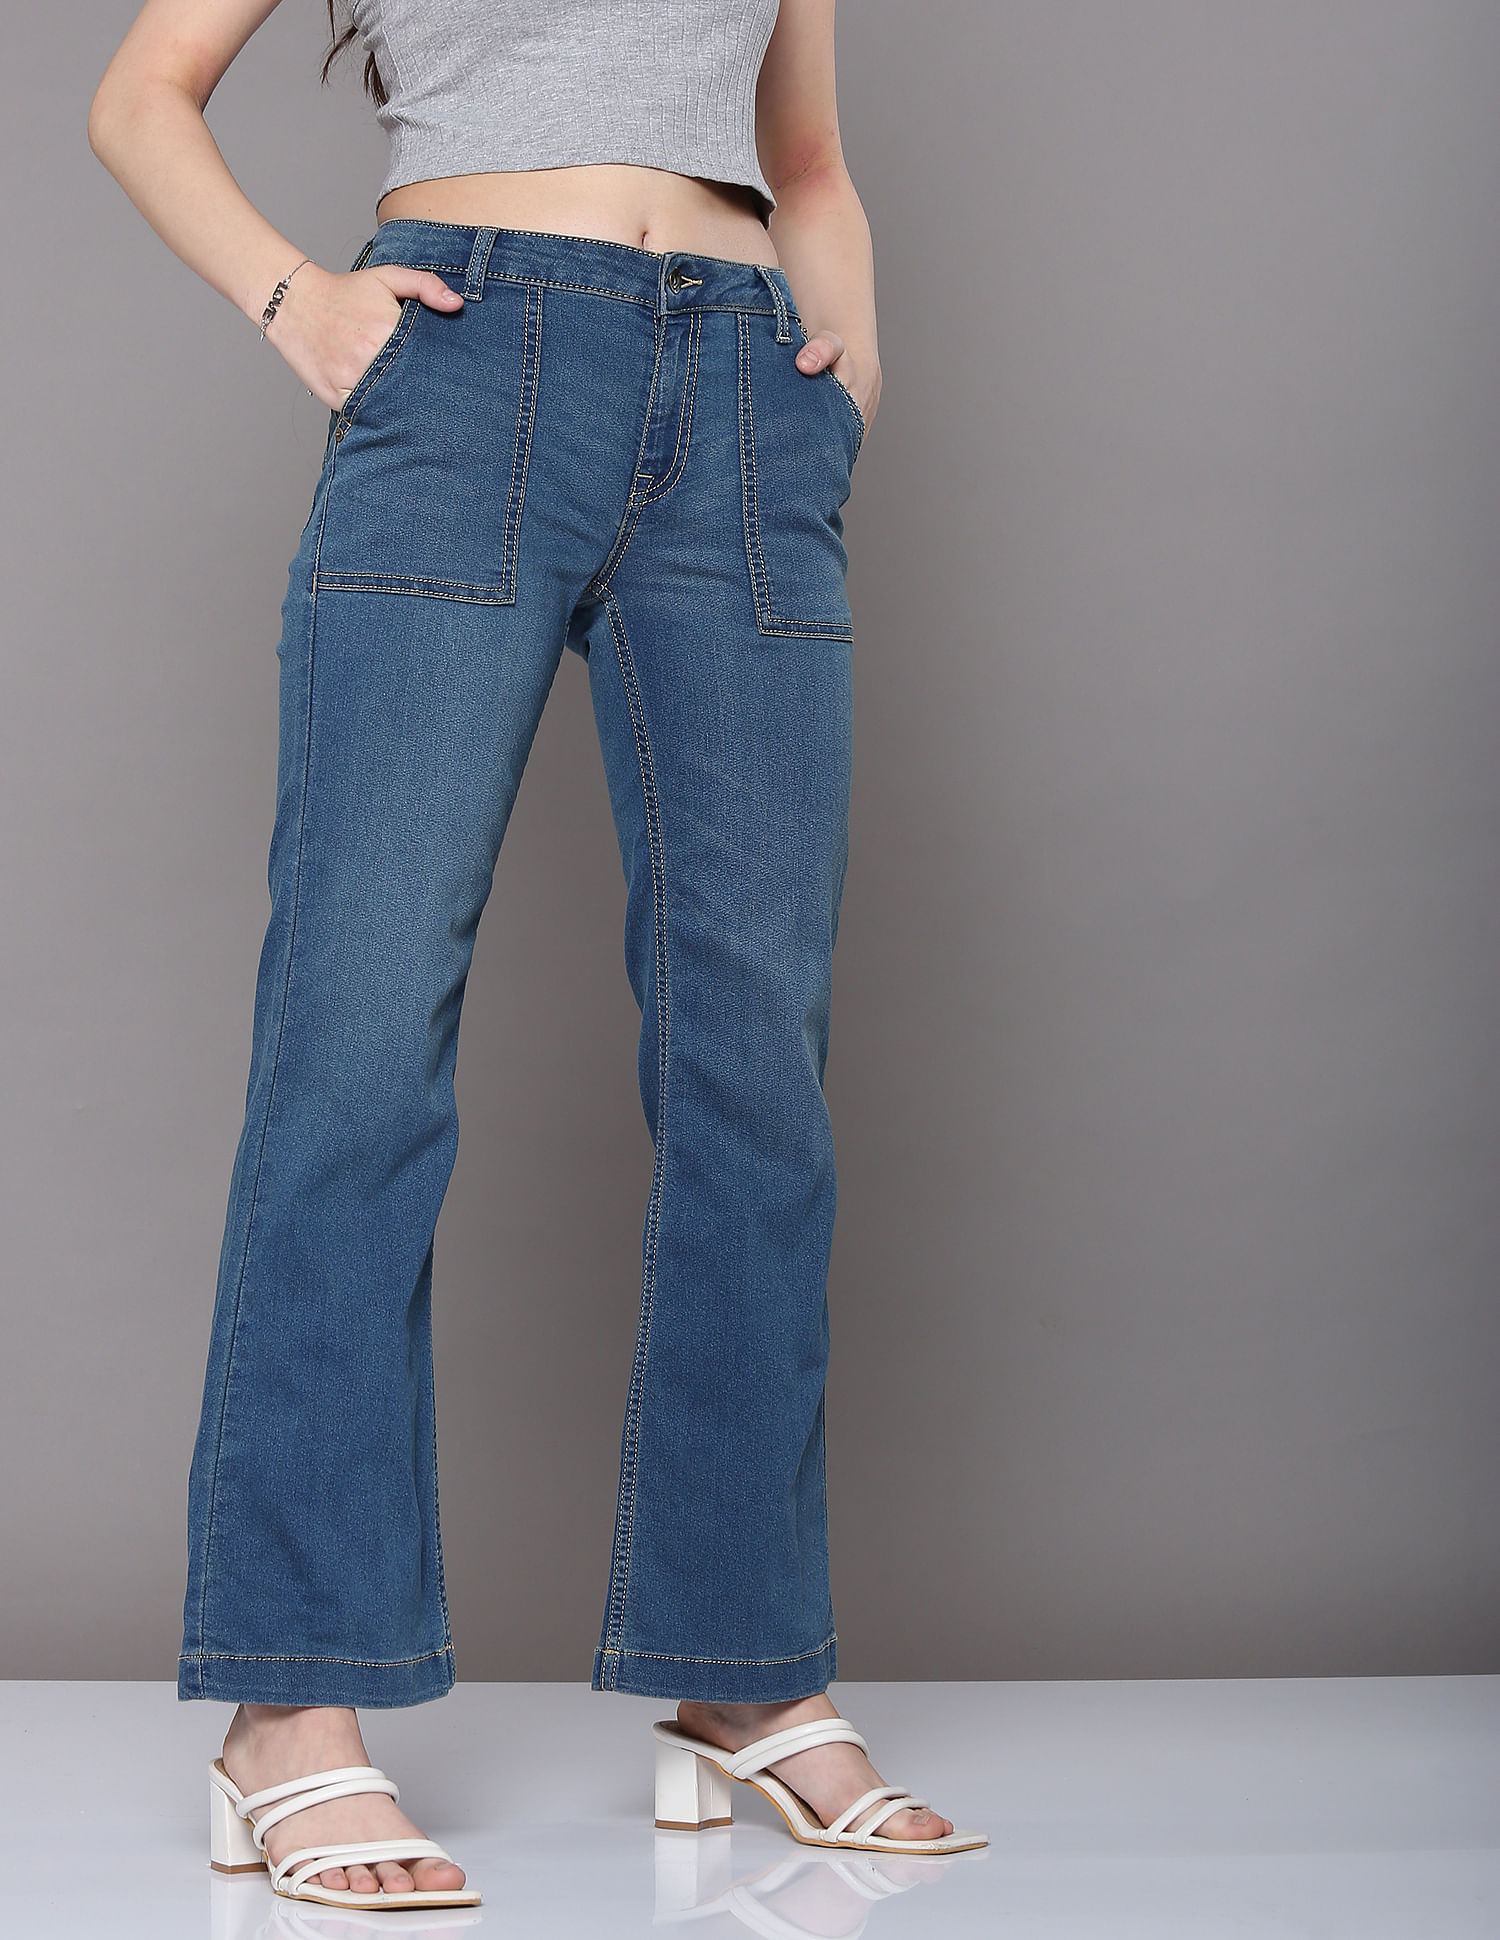 Buy Sky Soars: Fashion Elegance in Women's Wide-Leg Denim Jeans (30, Ice  Blue) at Amazon.in